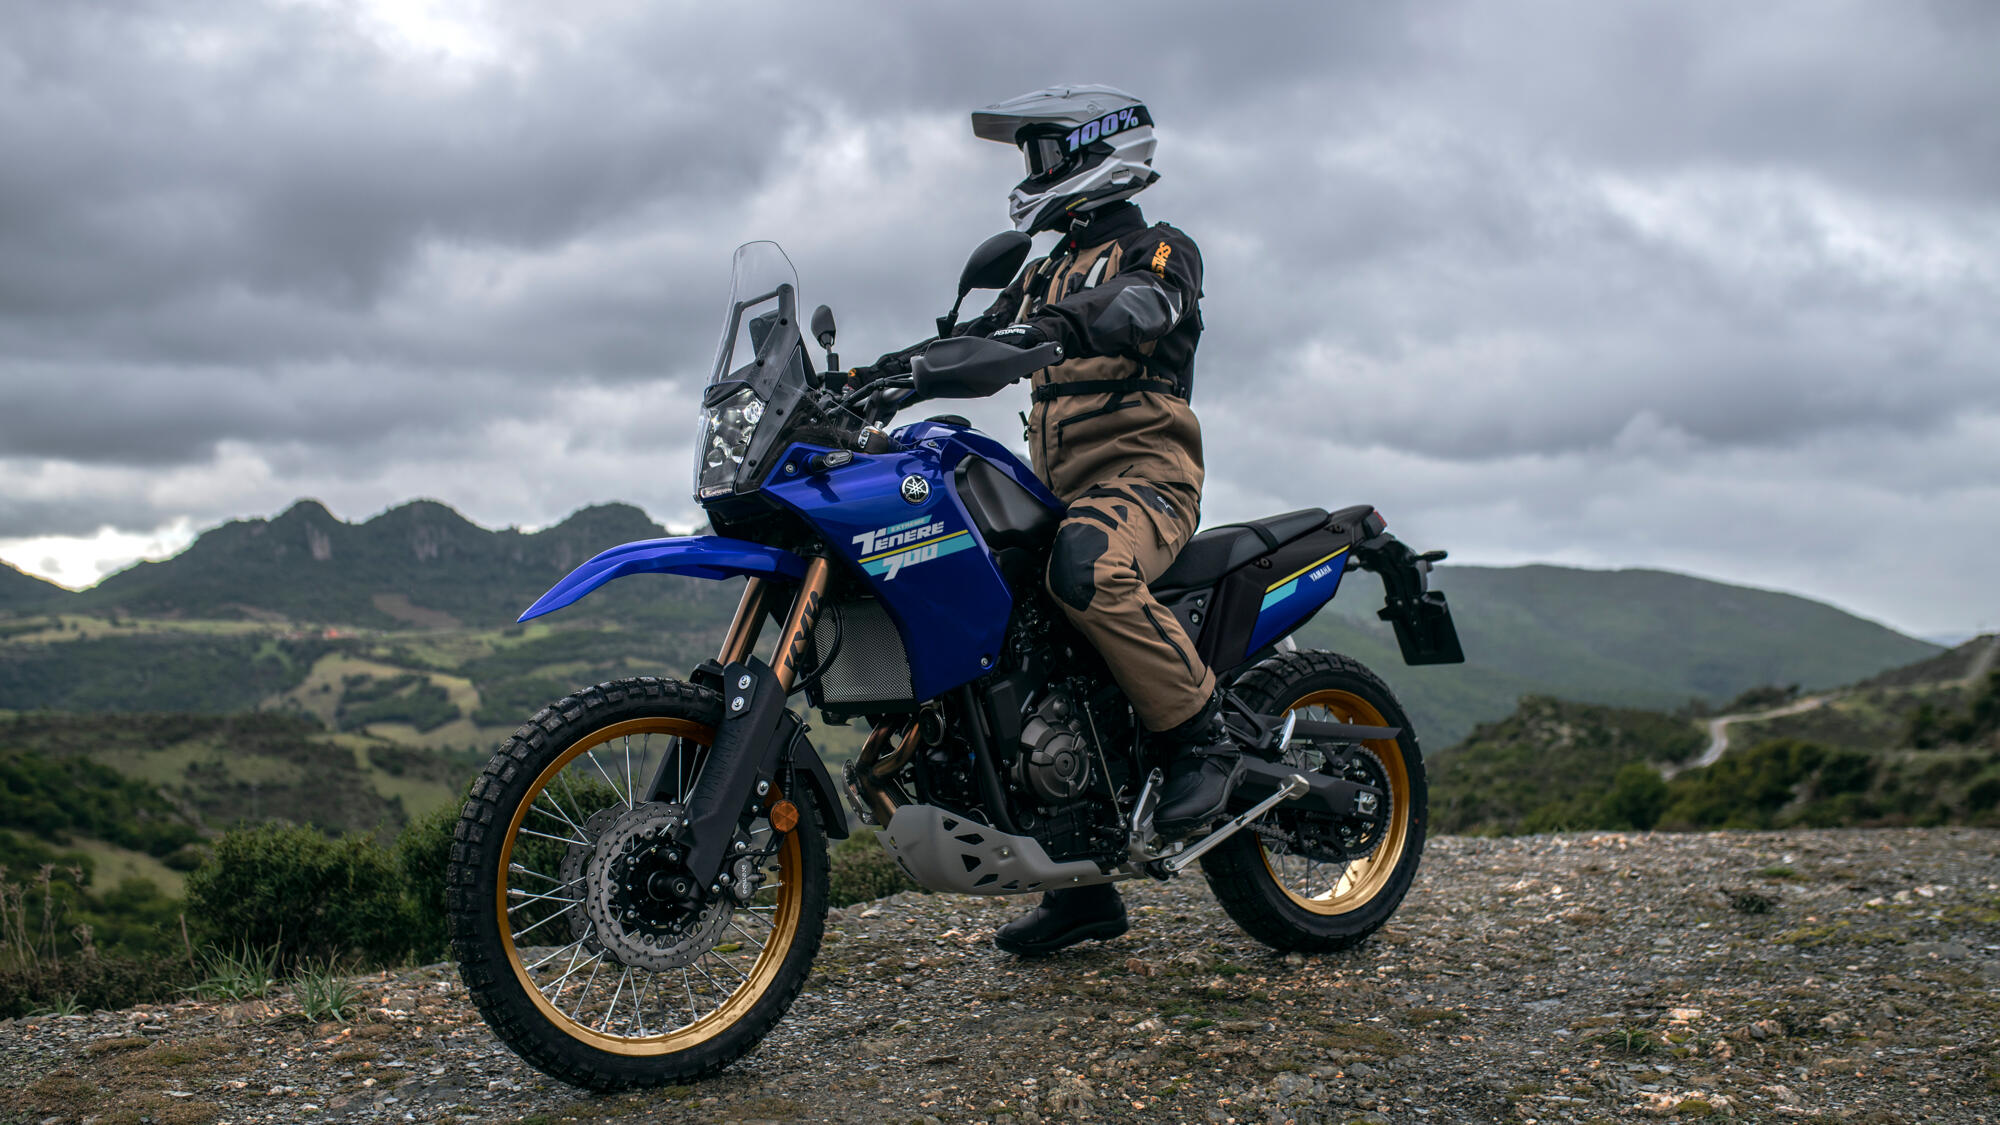 Piloto equipado montando una Yamaha Ténéré 700 en terreno montañoso, demostrando su capacidad off-road.